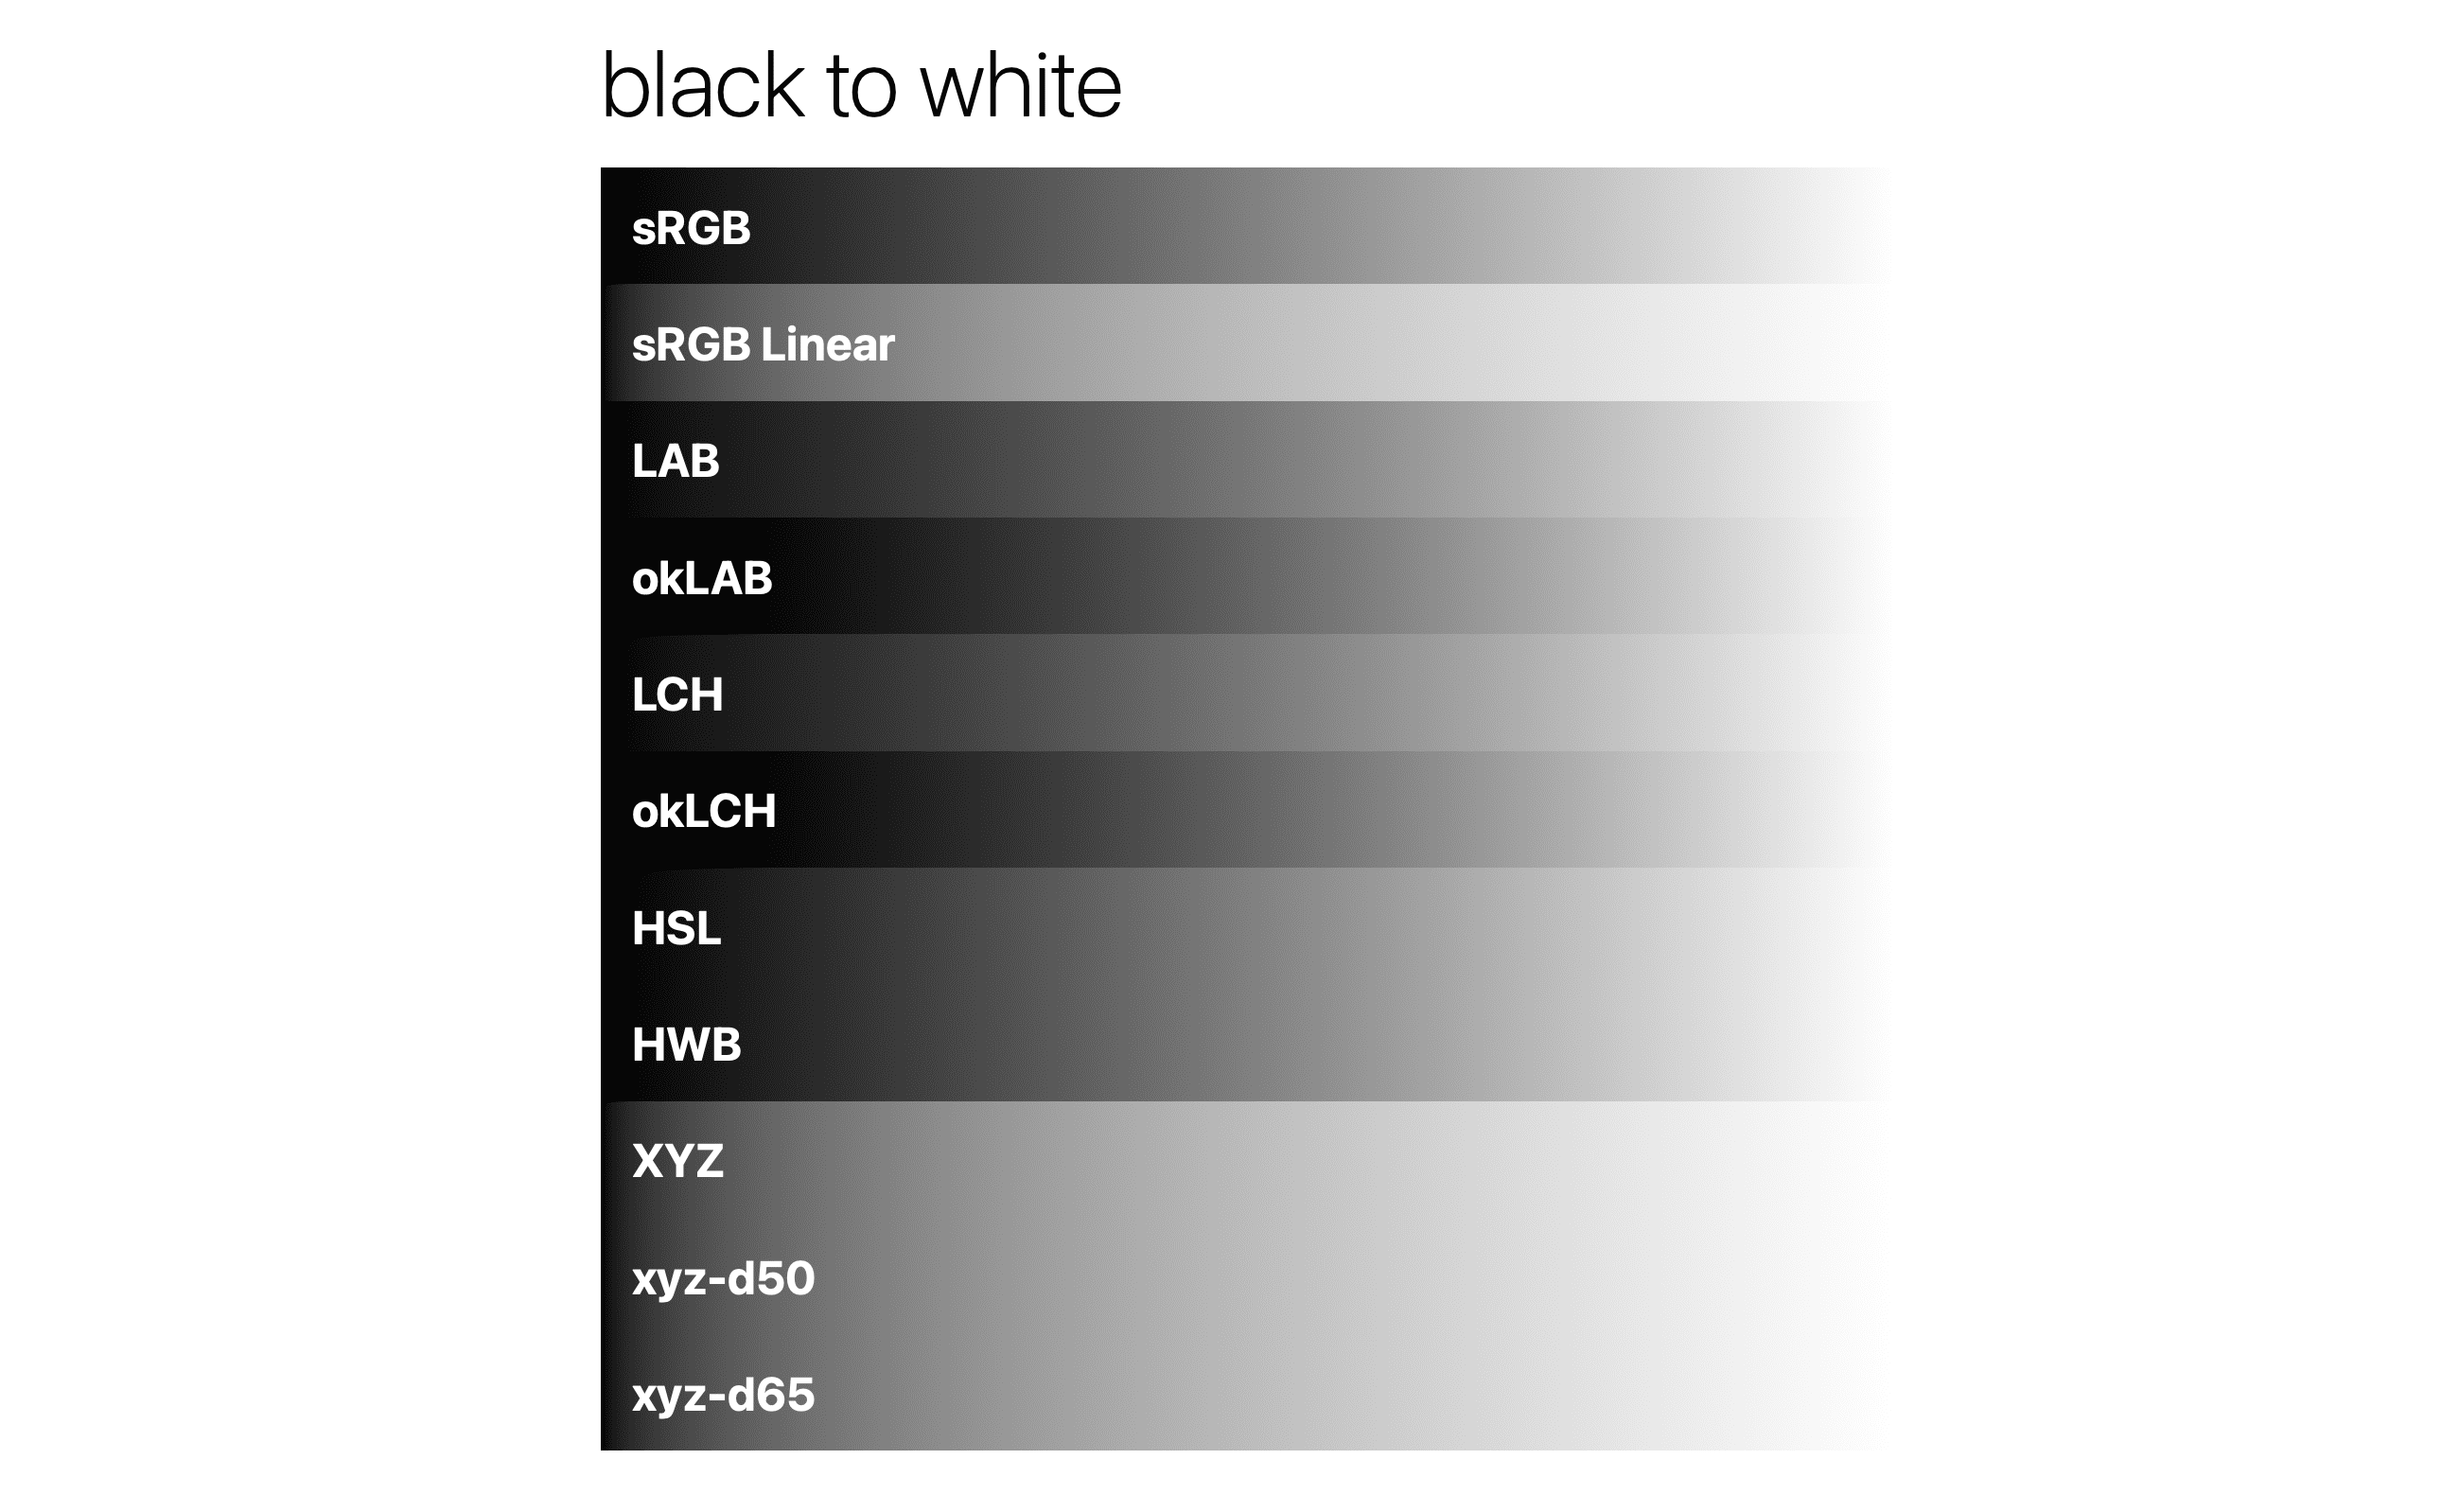 Gradien hitam ke putih dalam ruang warna berbeda.